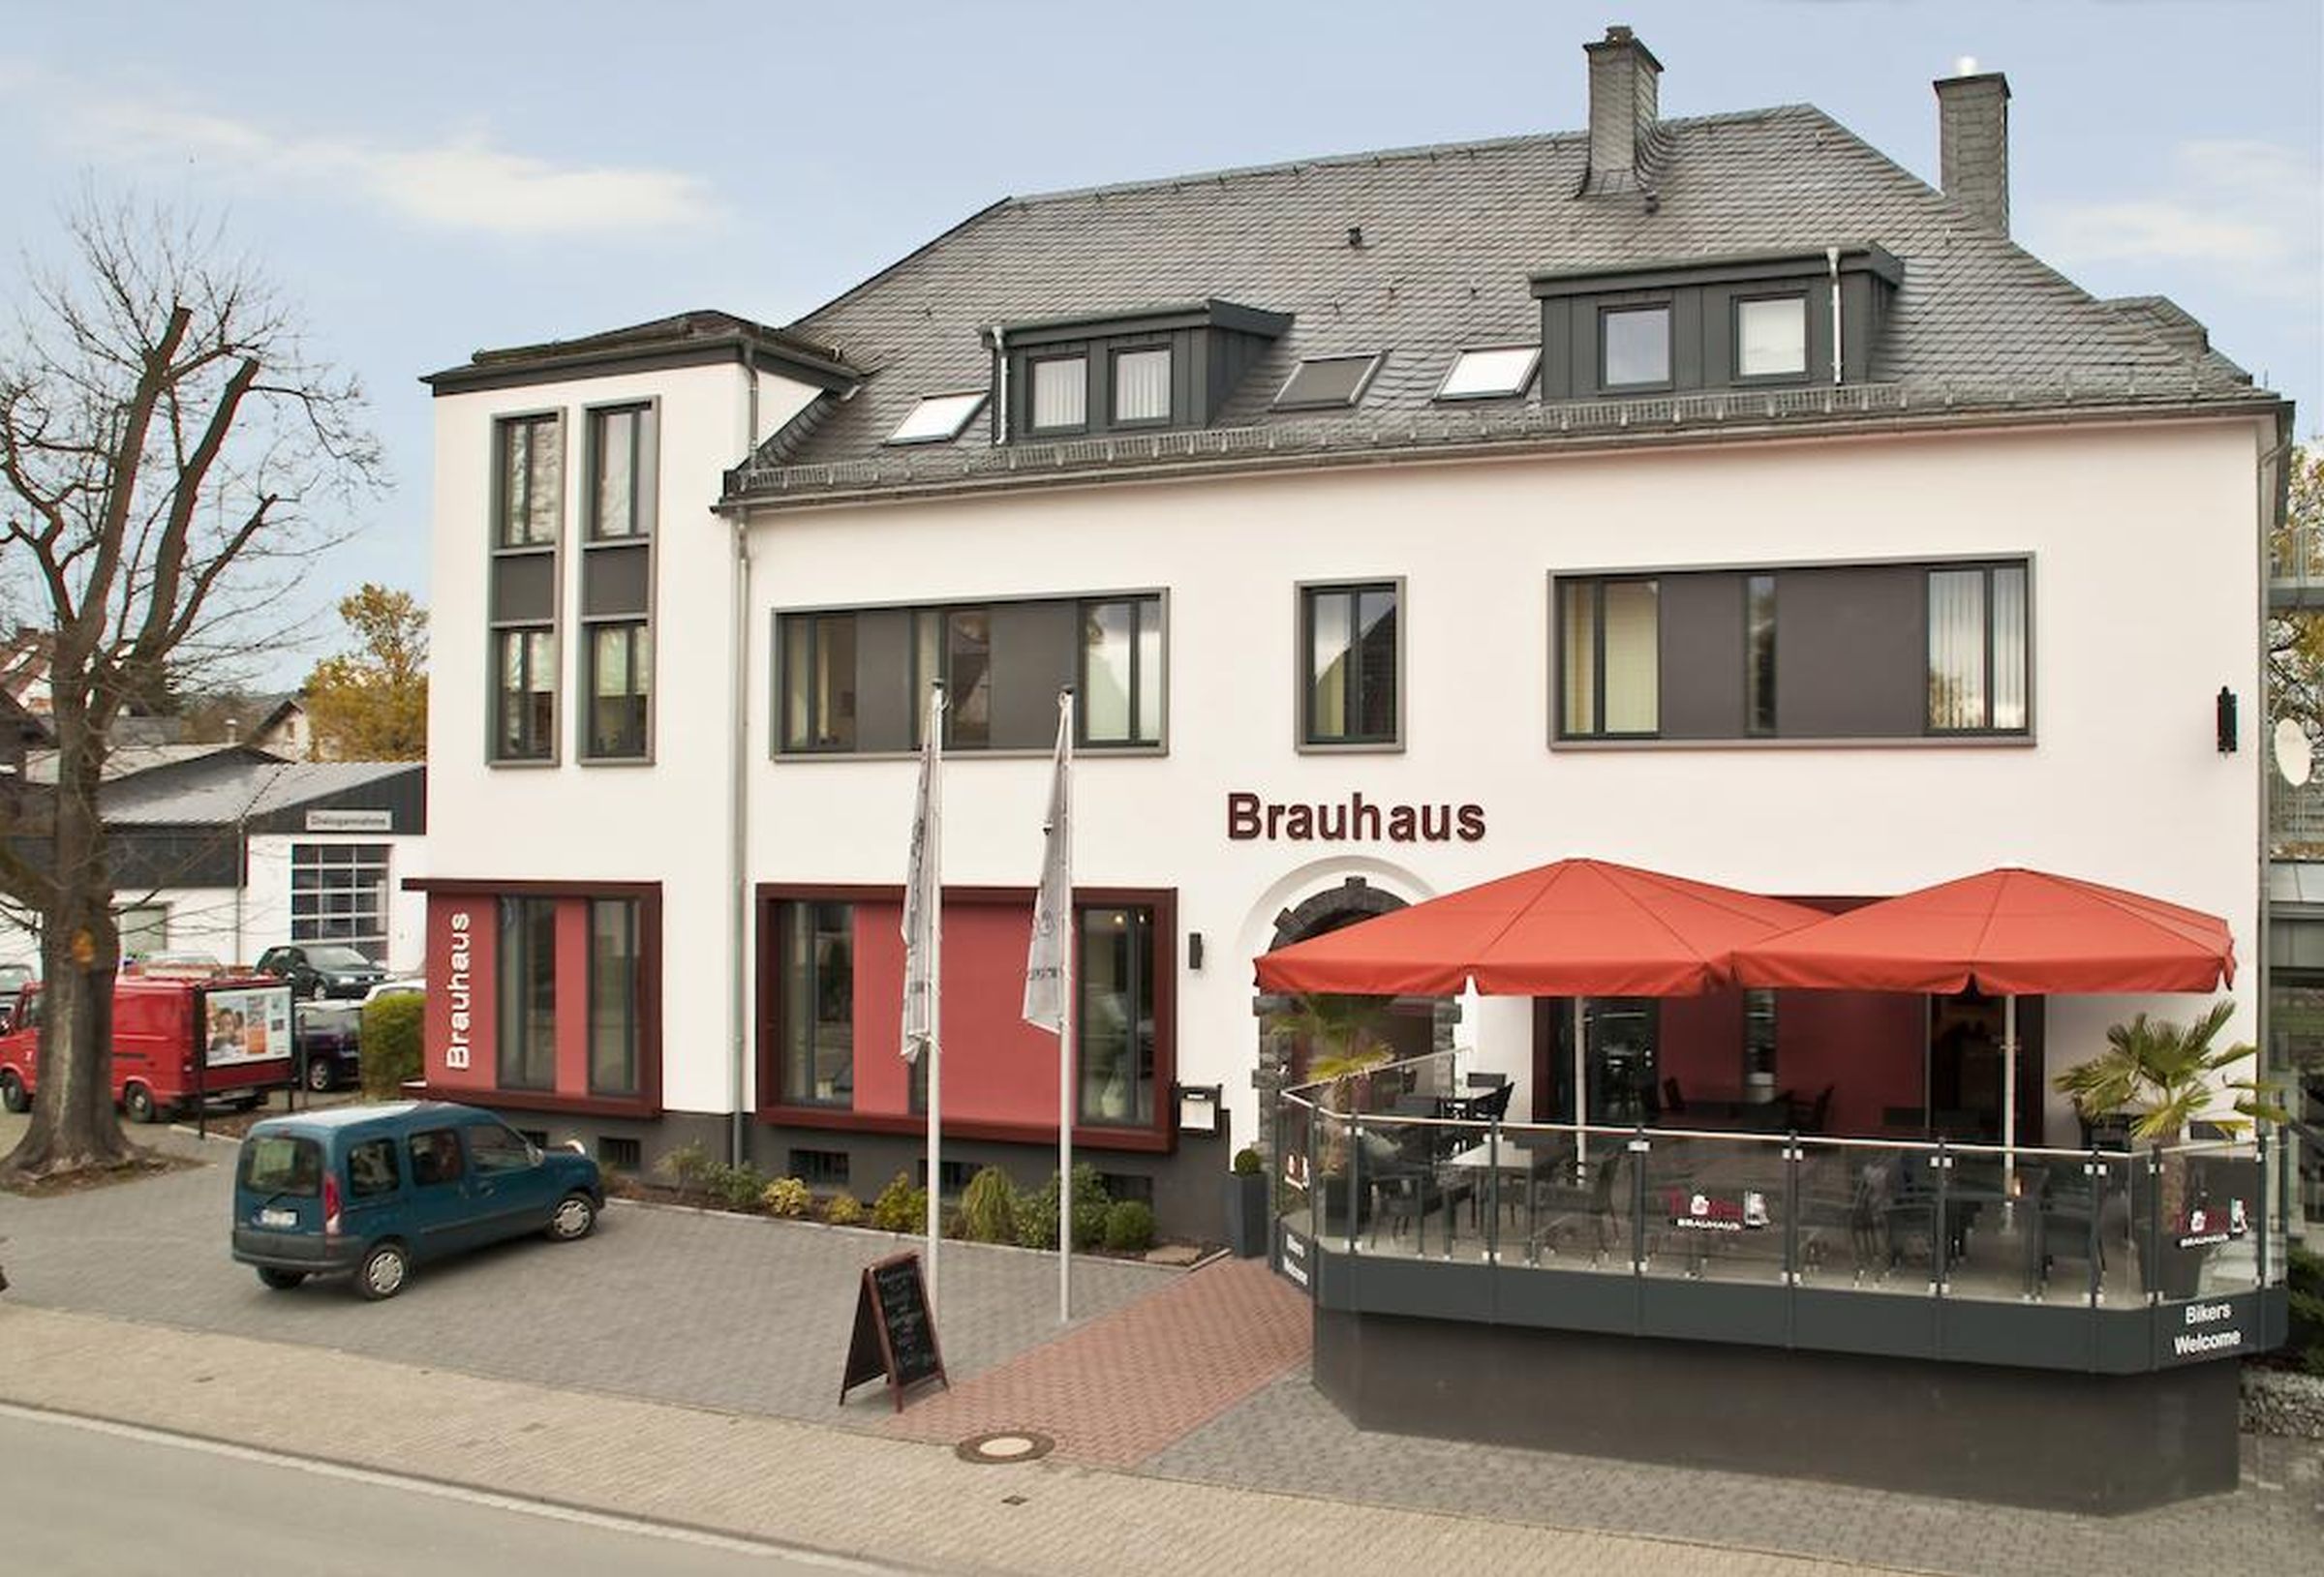 Troll's Brauhaus und Hotel, (Medebach). DZ Su Ferienhaus in Nordrhein Westfalen